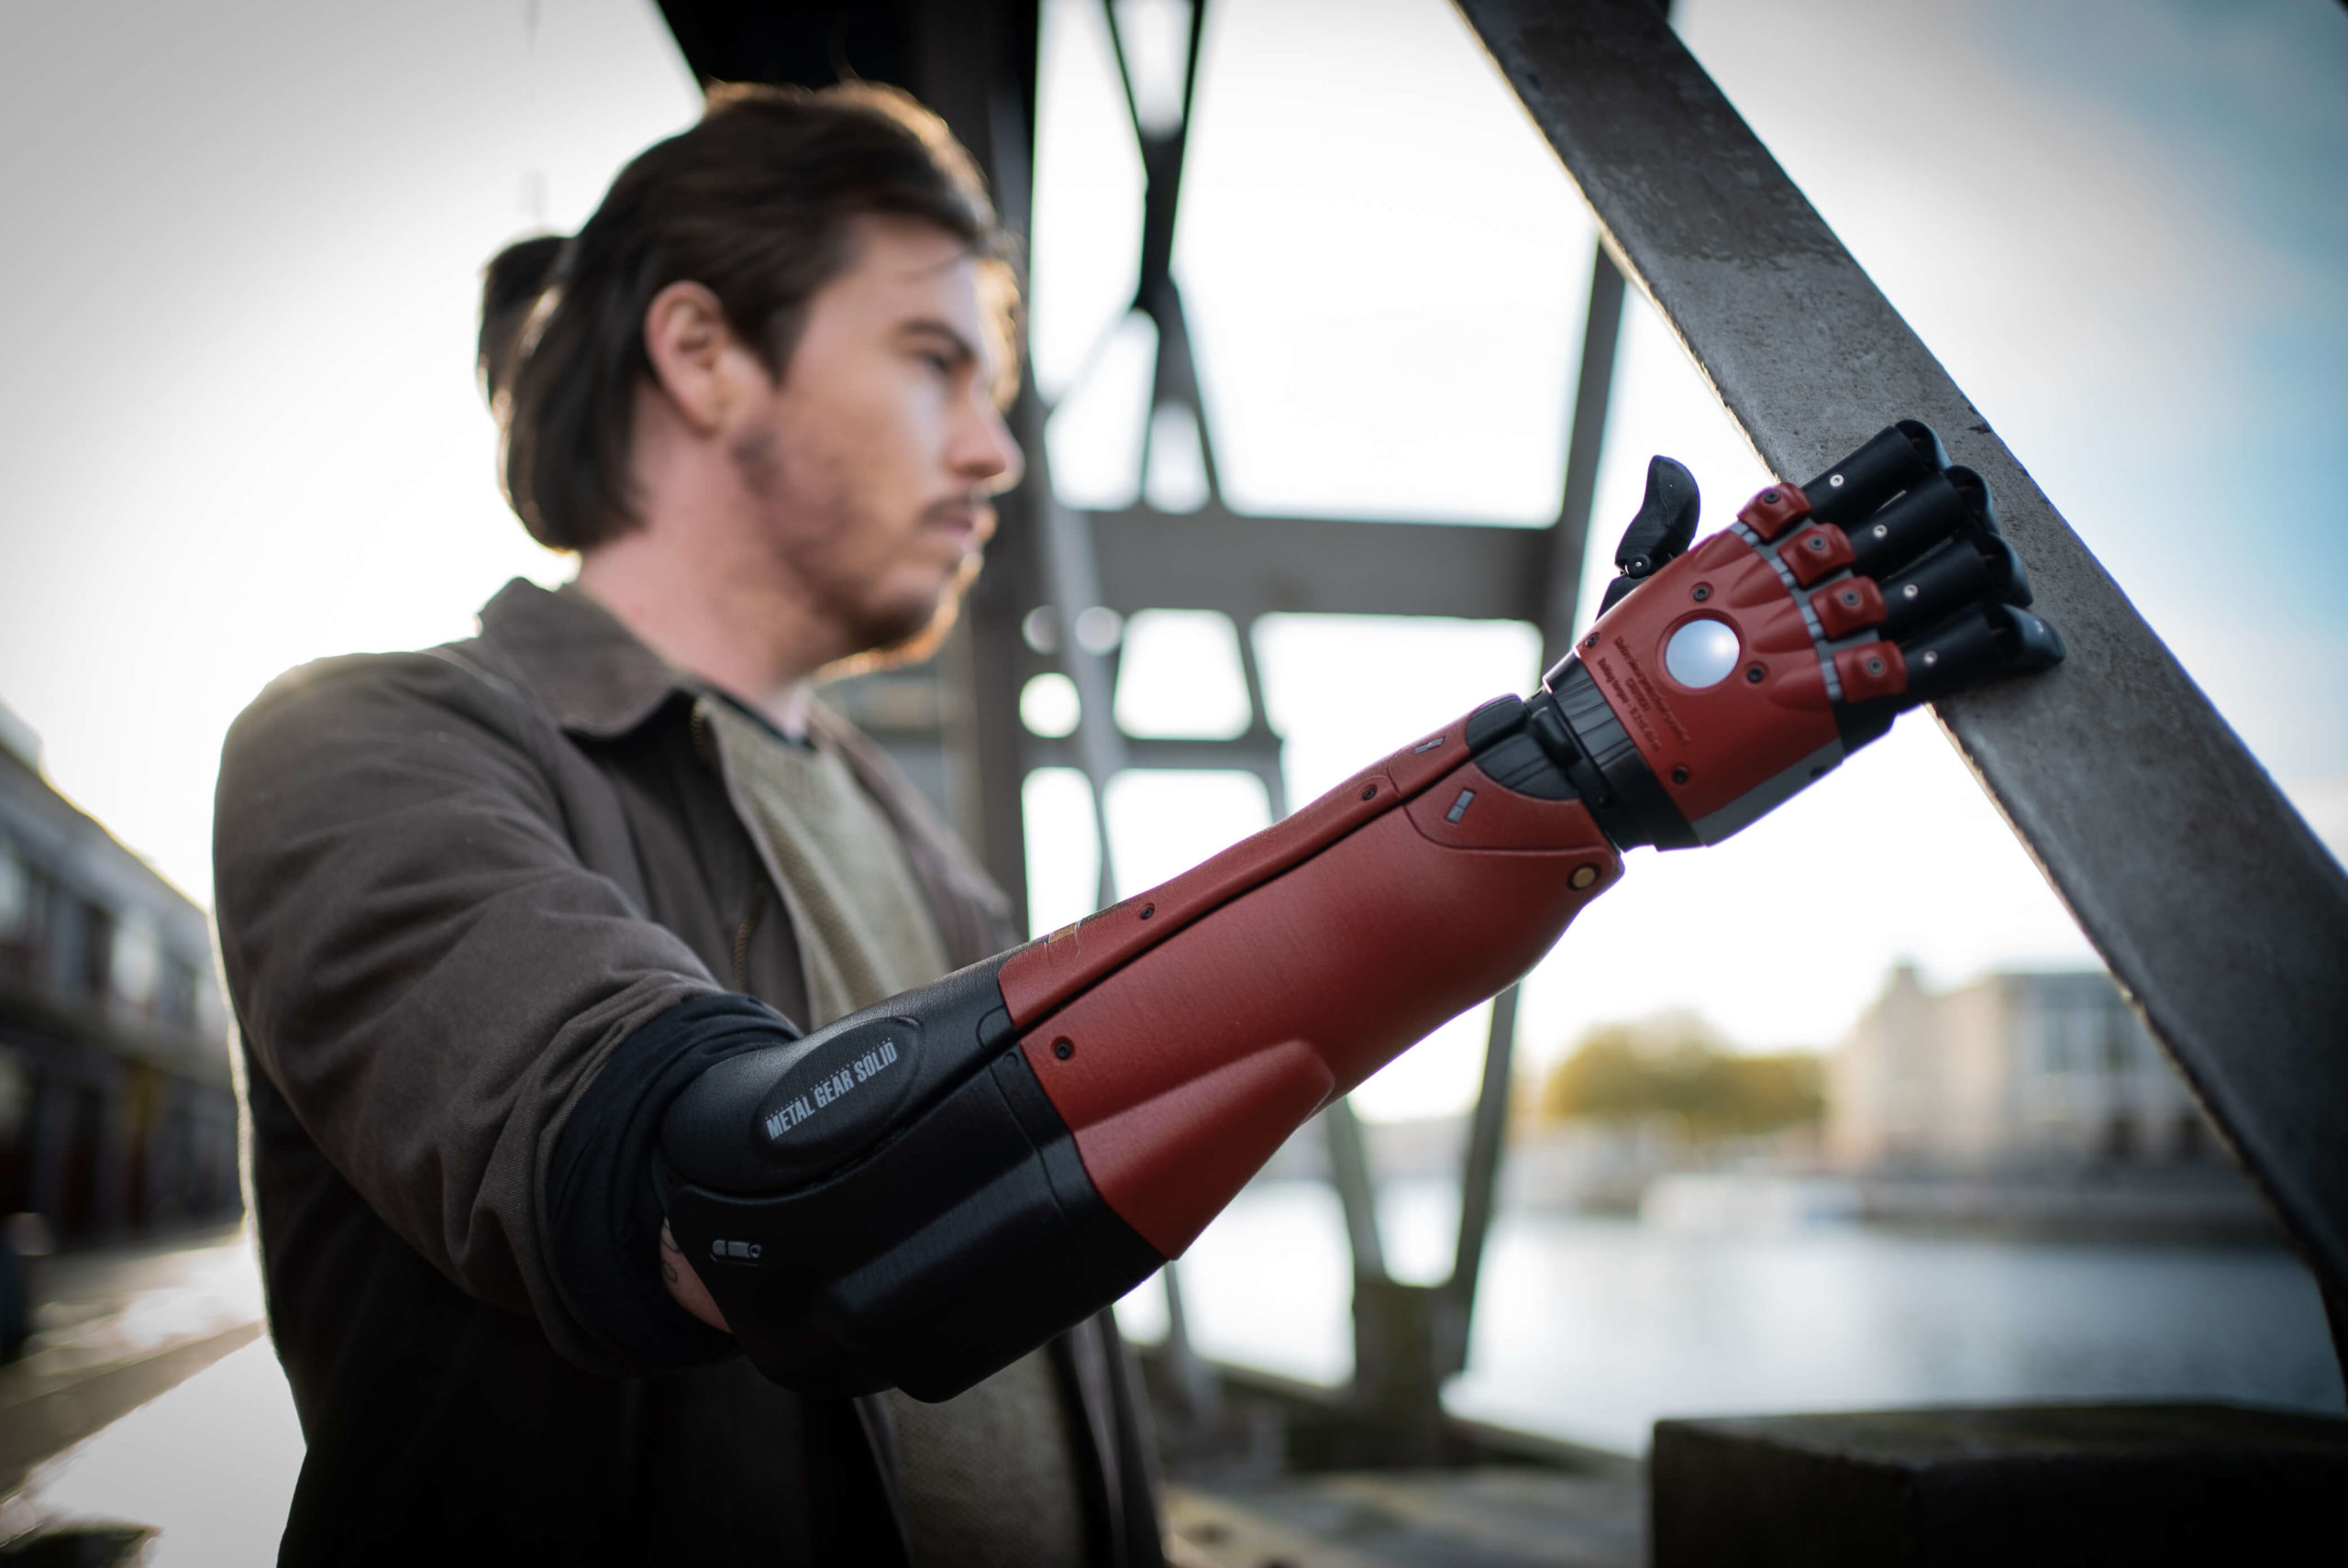 bionic arm prosthetics